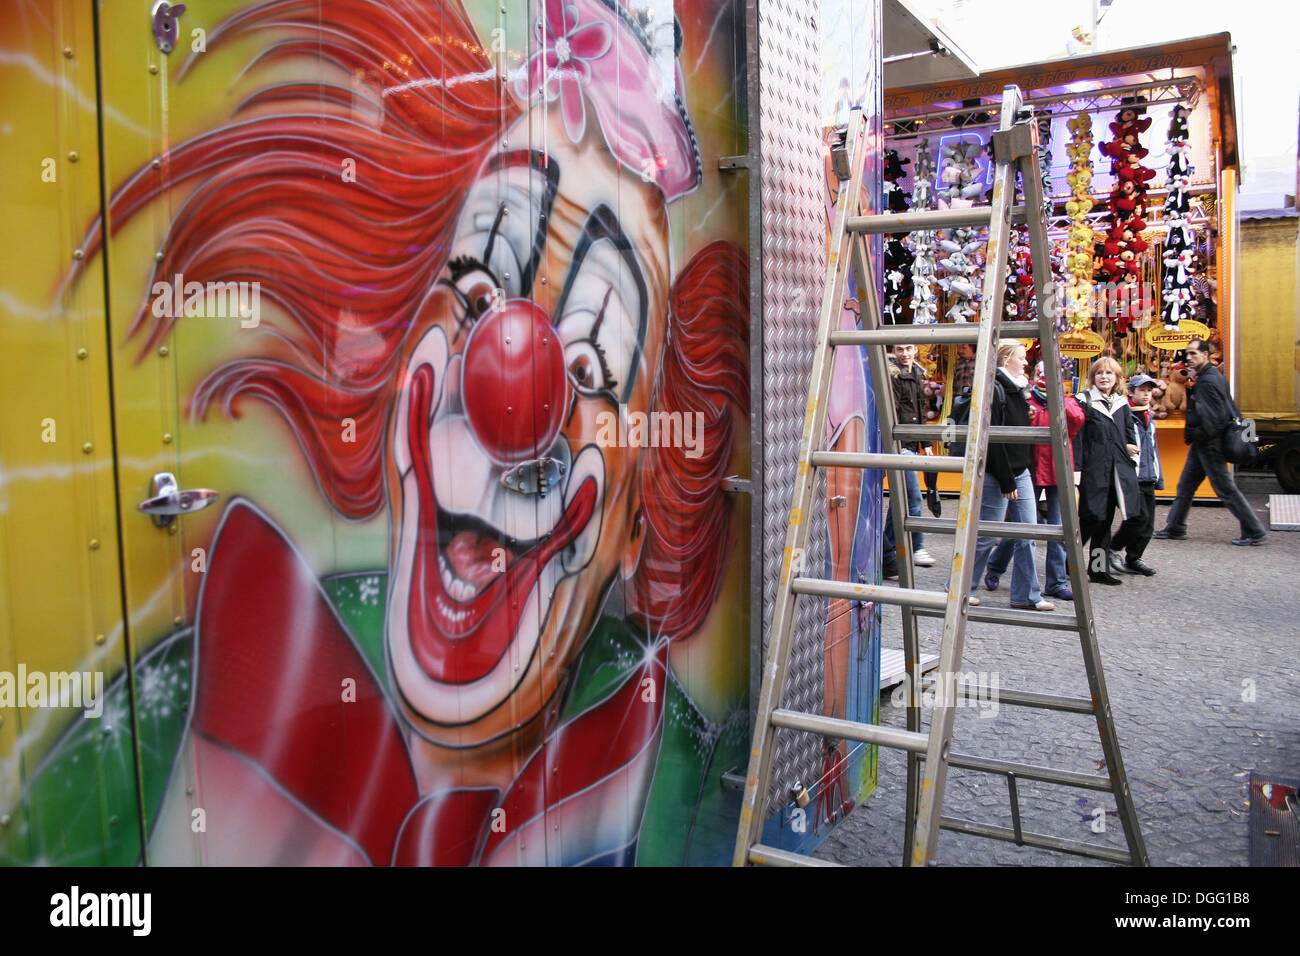 Clown, Malerei auf Amsterdam fair, Dam-Platz, Holland, Niederlande  Stockfotografie - Alamy